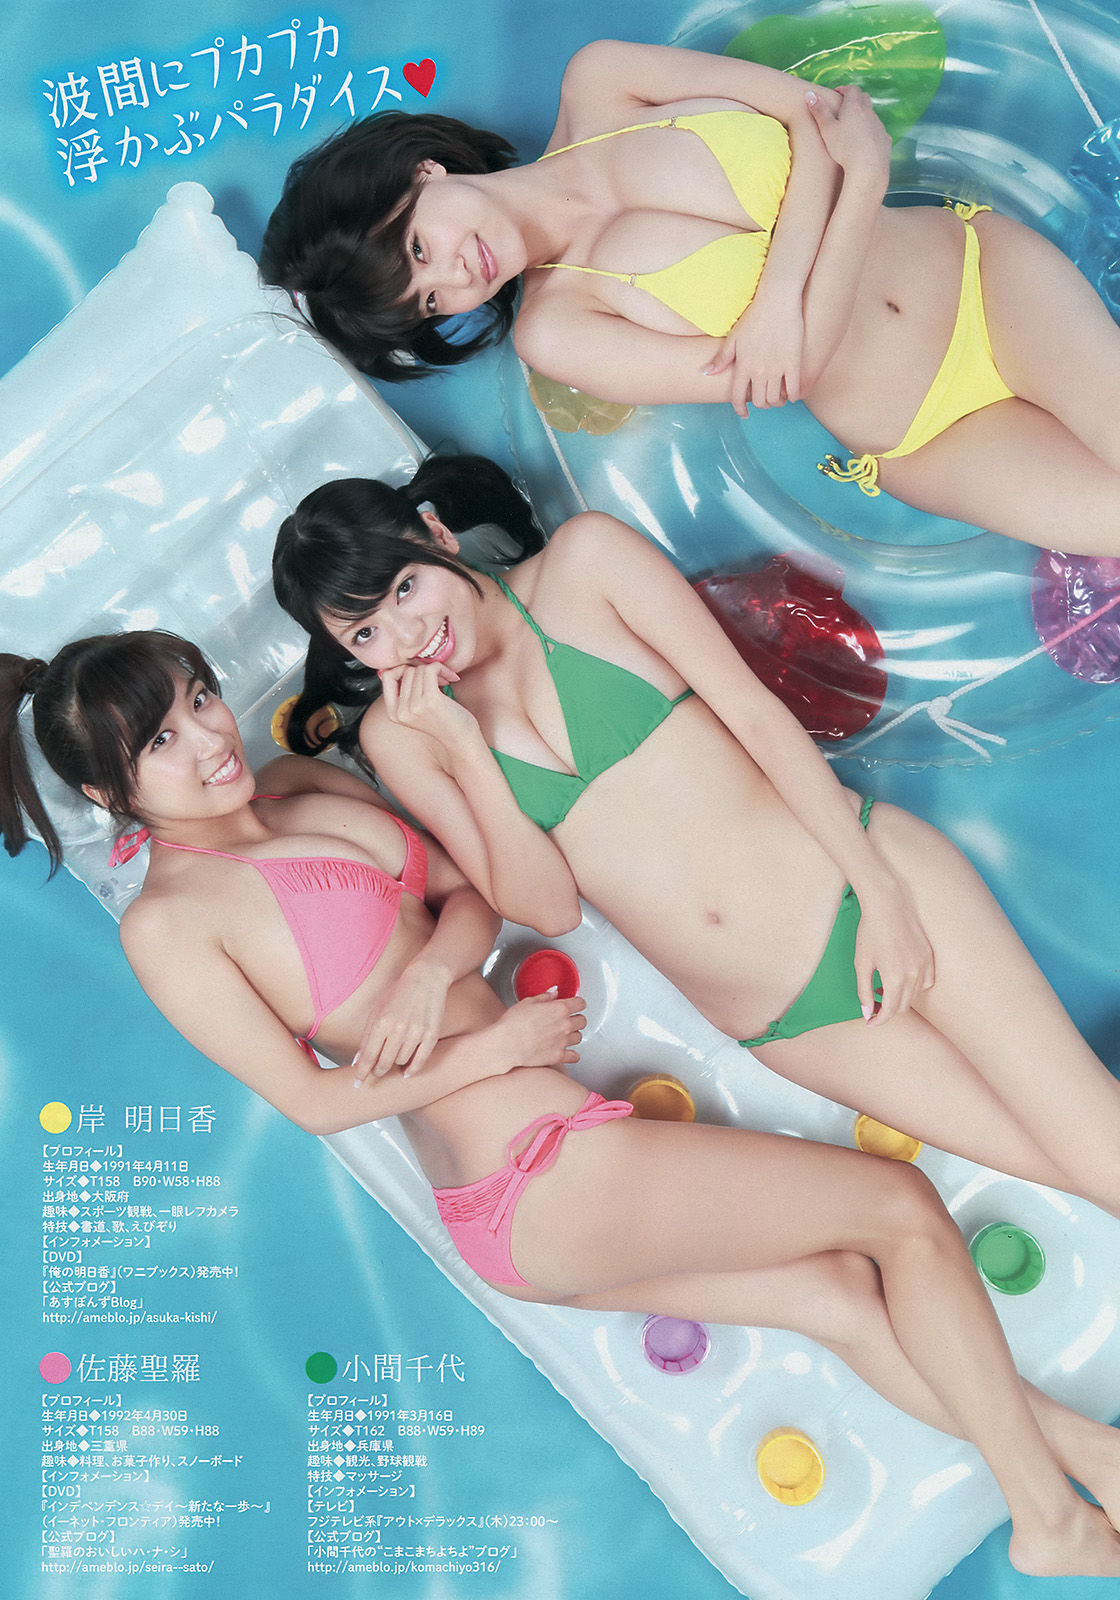 [Young Magazine] 2014年No.36-37 中村静香 さいとうまりな/(12P)